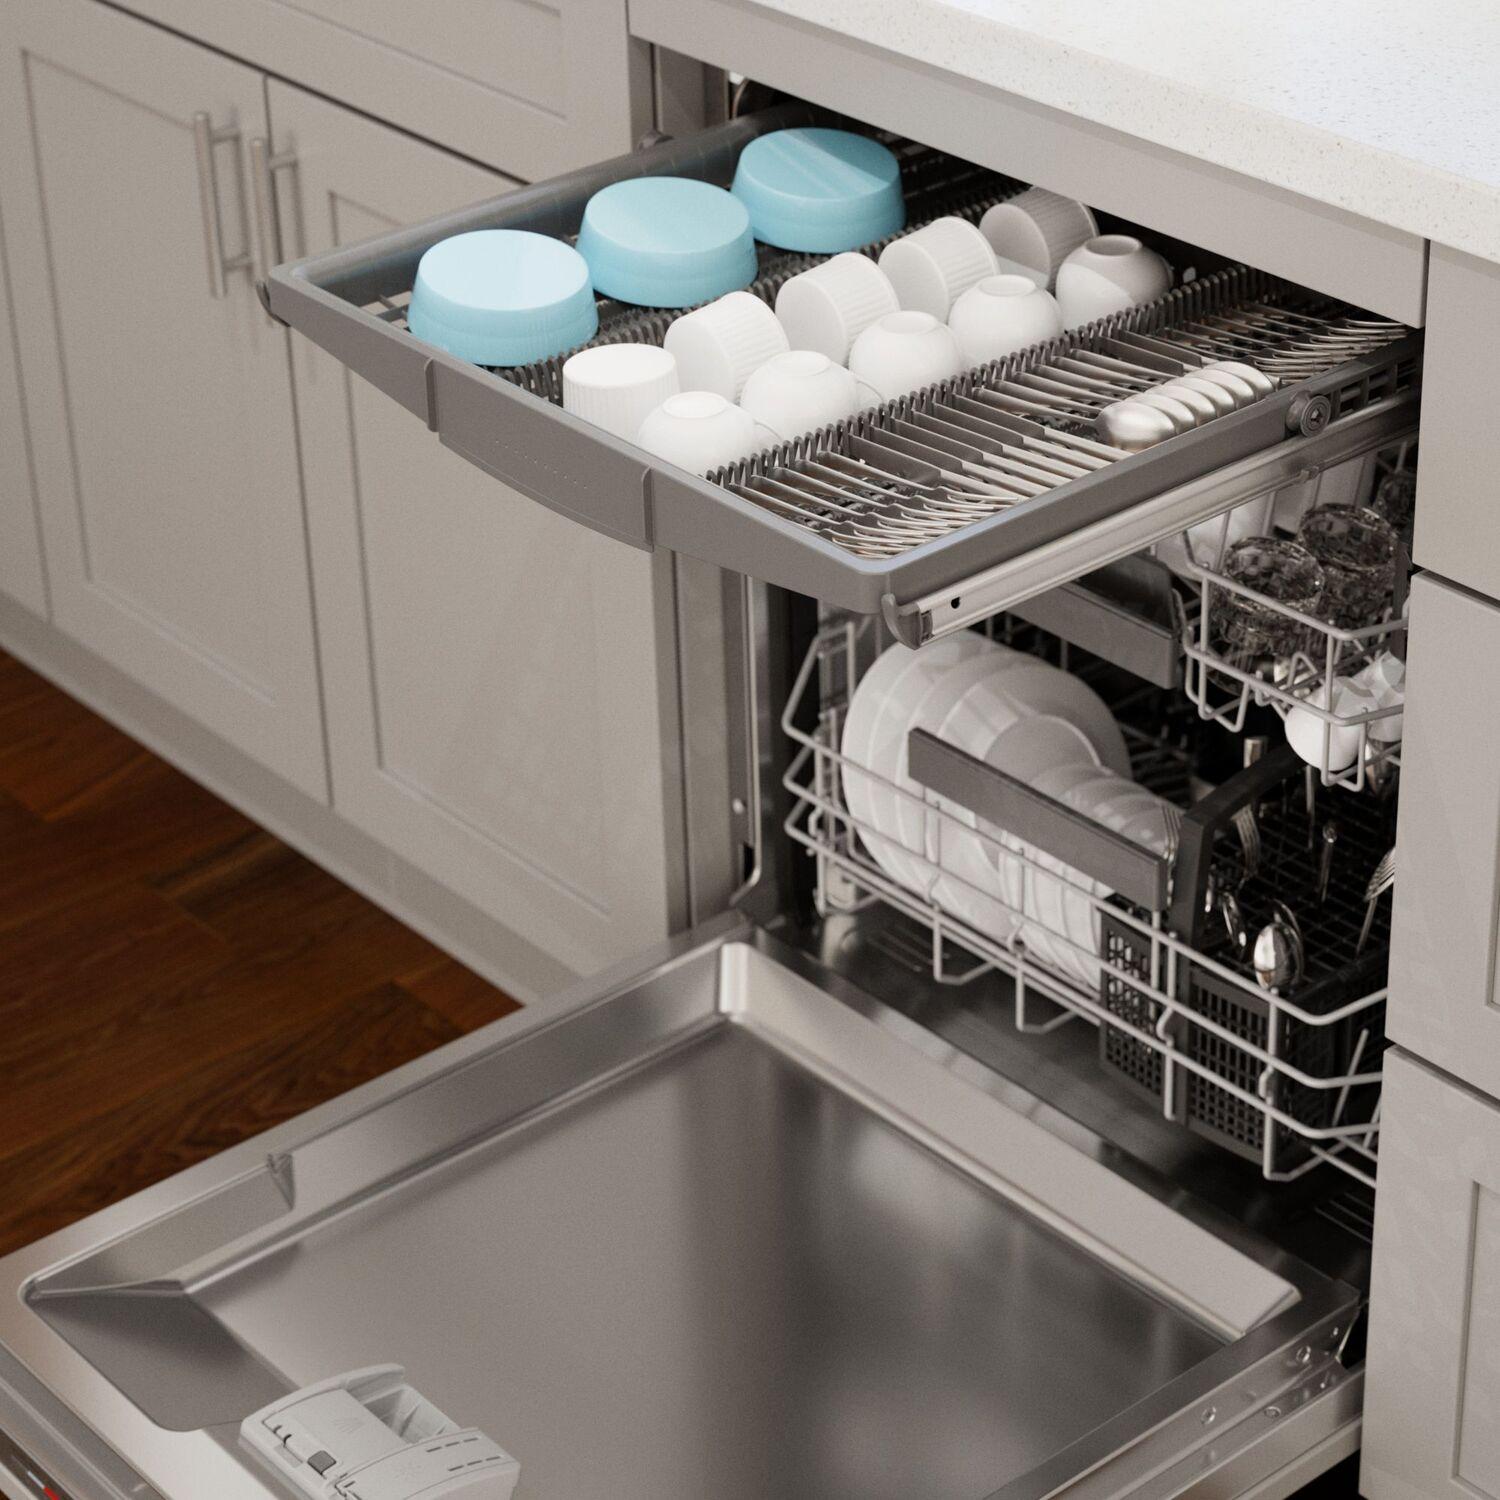 800 Series Dishwasher 24"